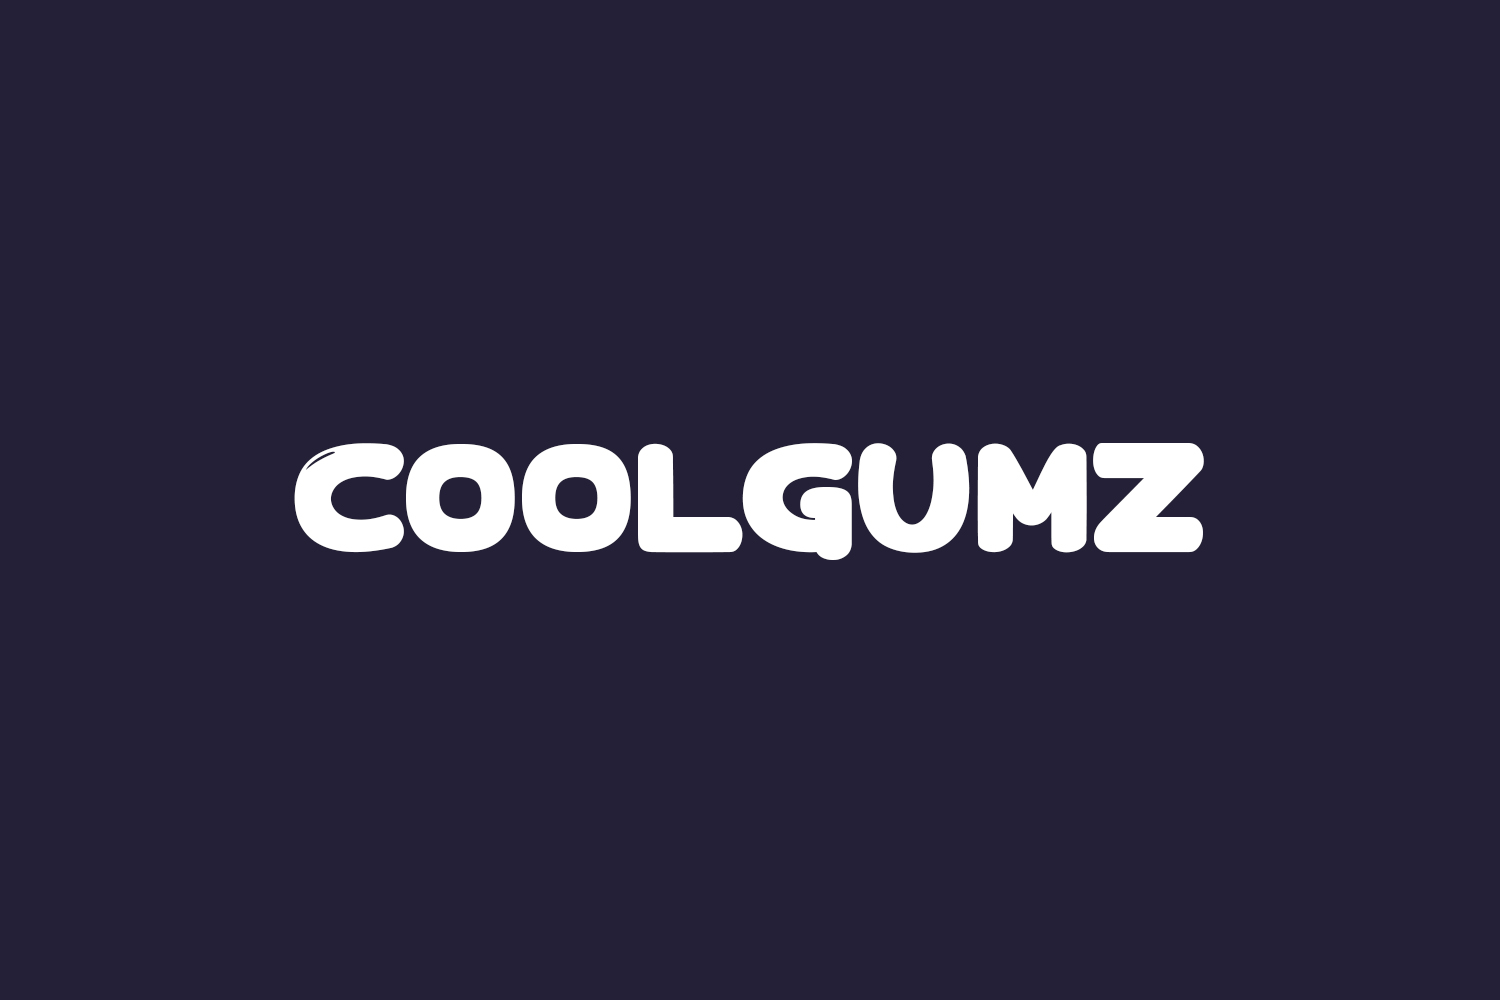 Coolgumz Free Font